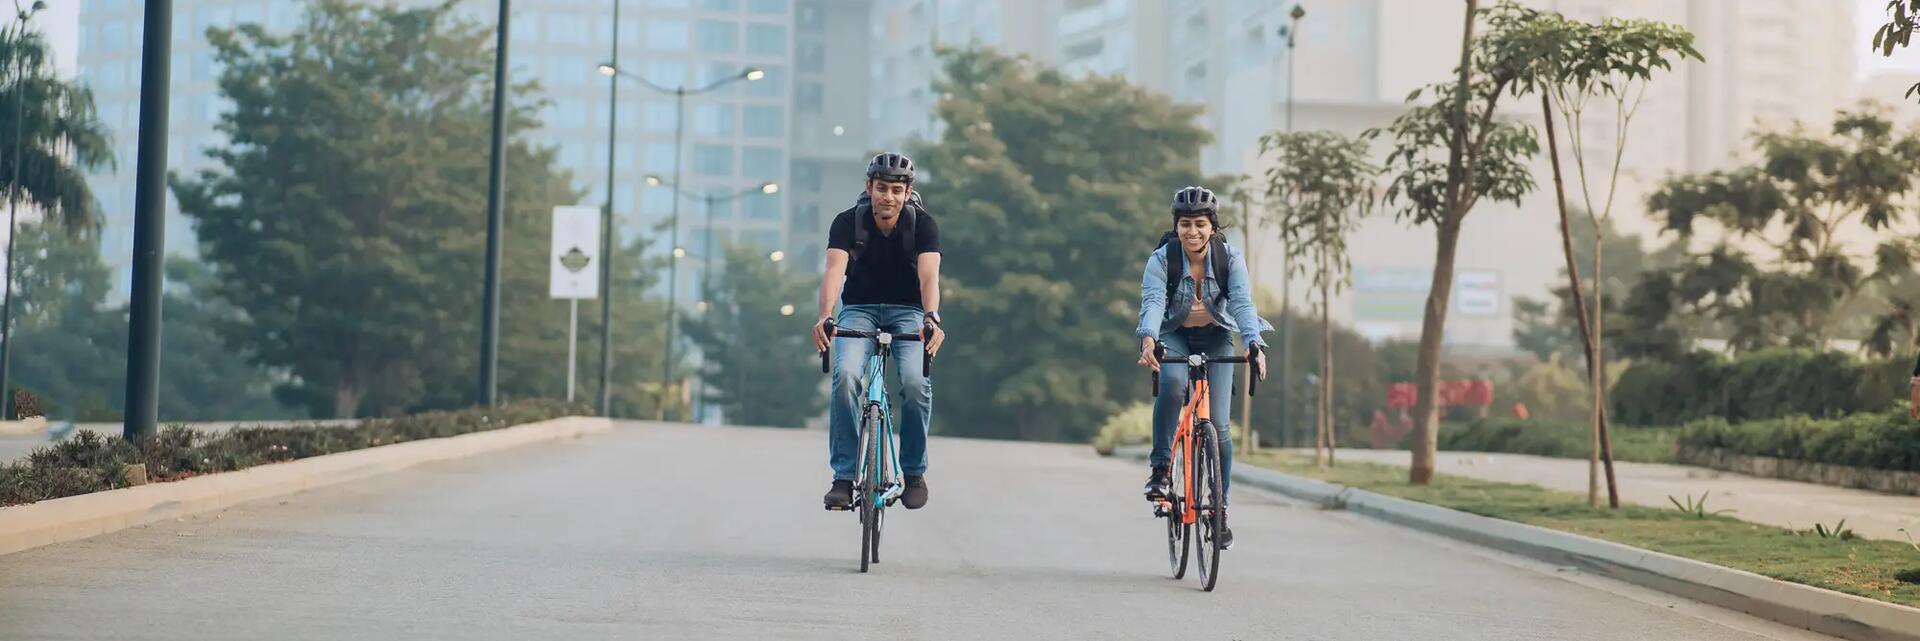 Kobieta i mężczyzna jadący na rowerach z męską ramą